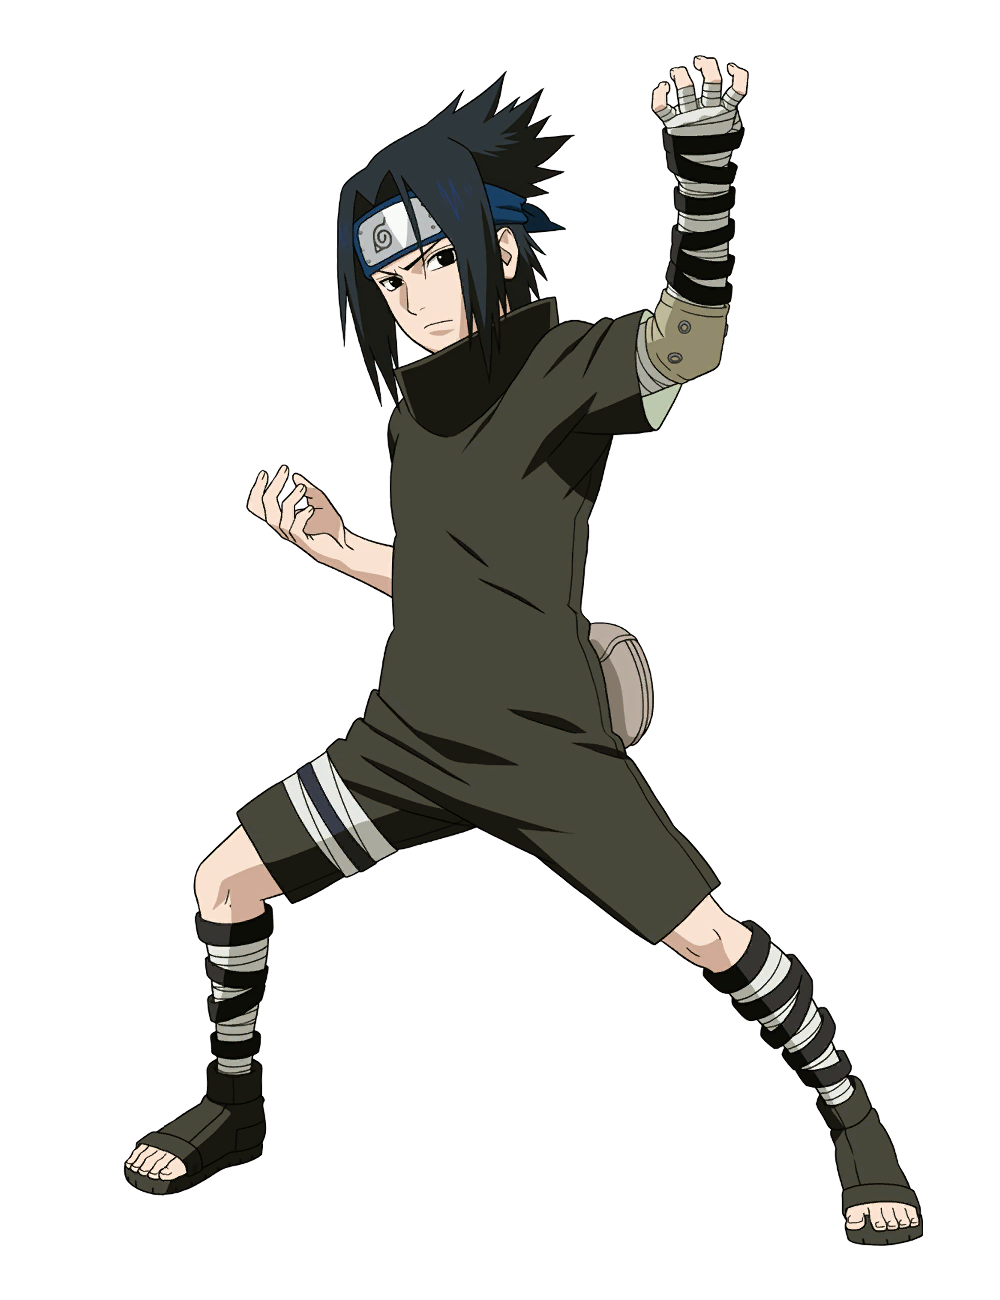 Gaara Sasuke Uchiha Naruto Shippuden: Ultimate Ninja Storm 3 Cosplay,  naruto, hand, manga, sasuke Uchiha png